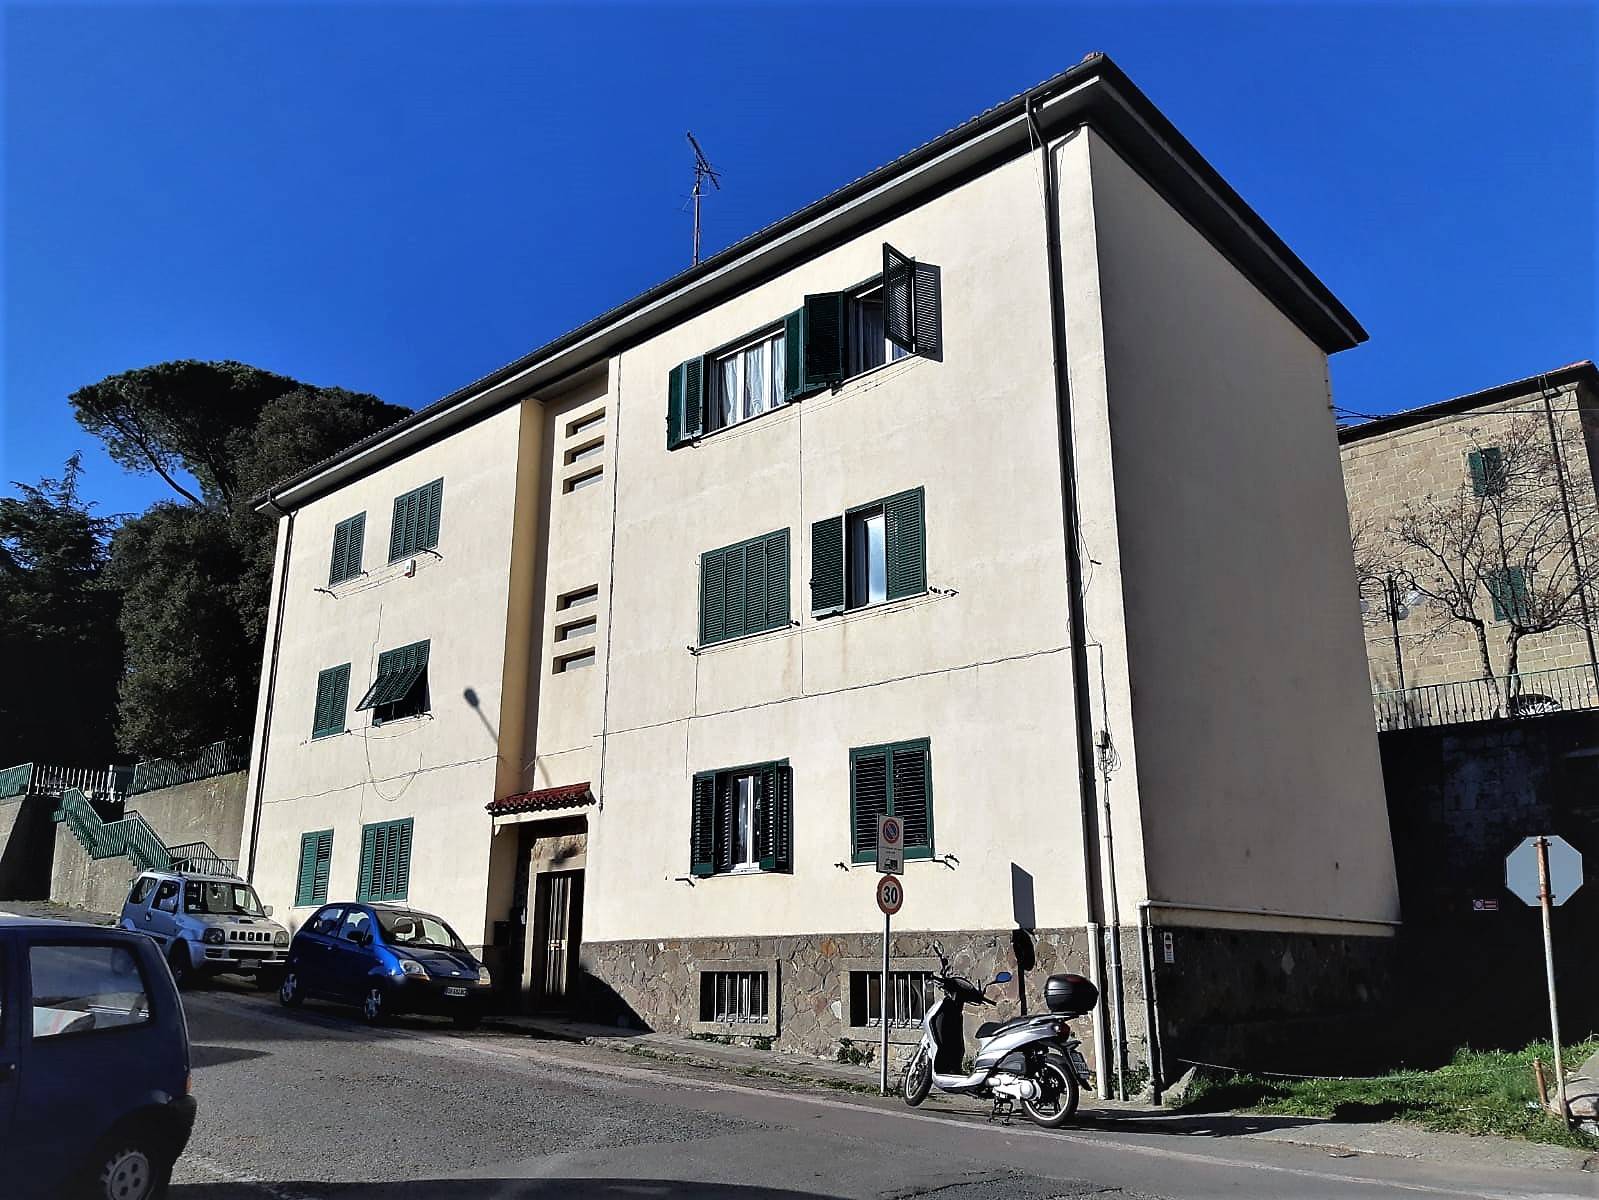 Appartamento in vendita a Arcidosso, 4 locali, prezzo € 80.000 | PortaleAgenzieImmobiliari.it